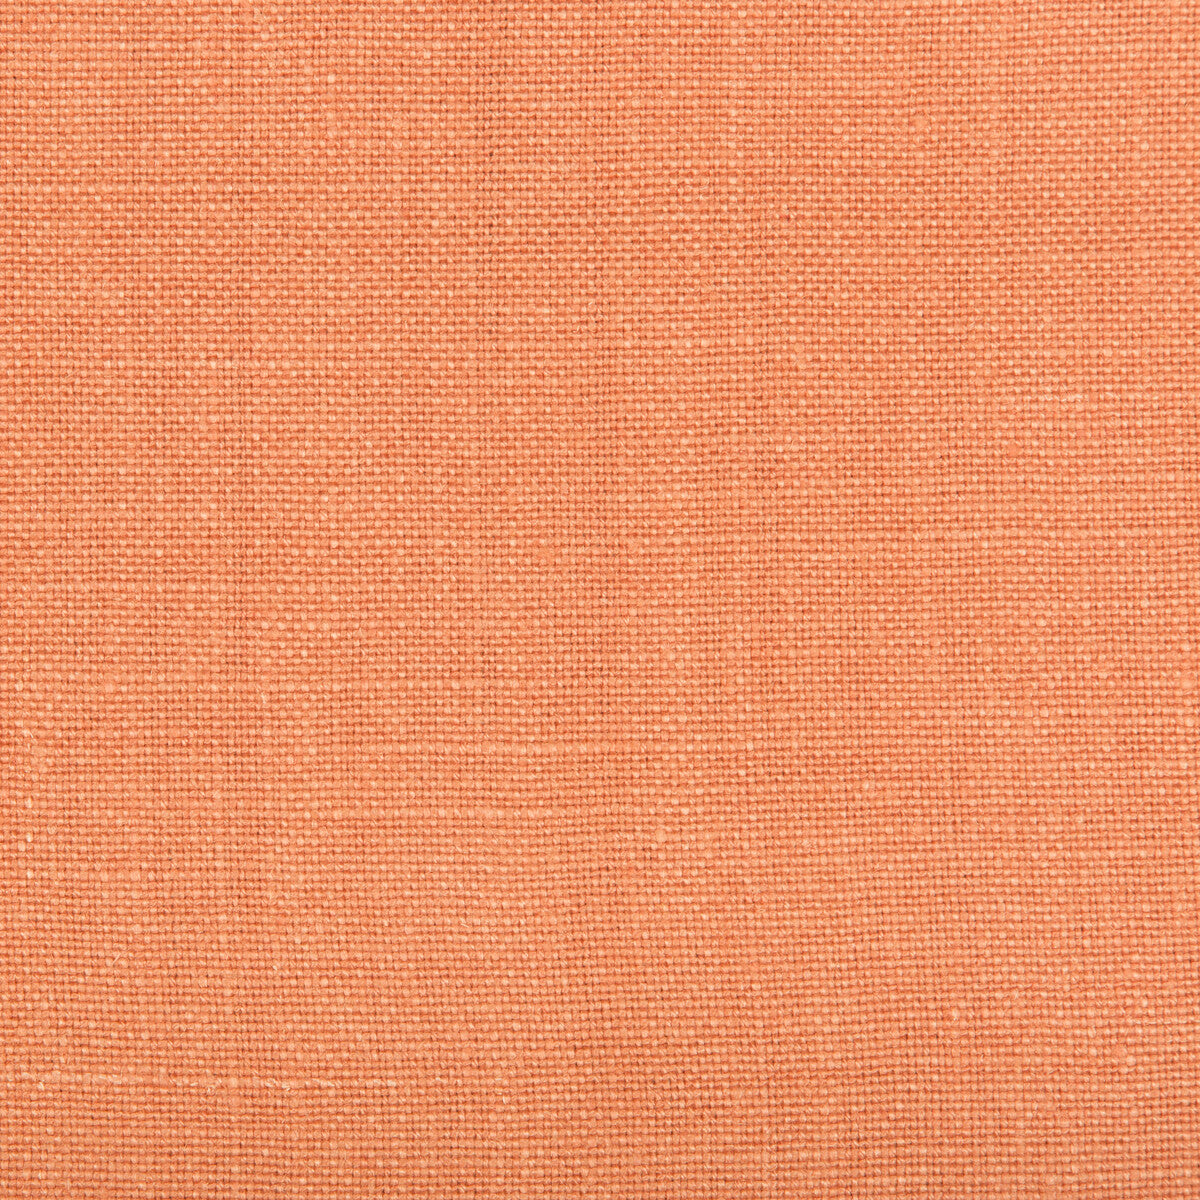 Kravet Basics fabric in 35342-1217 color - pattern 35342.1217.0 - by Kravet Basics